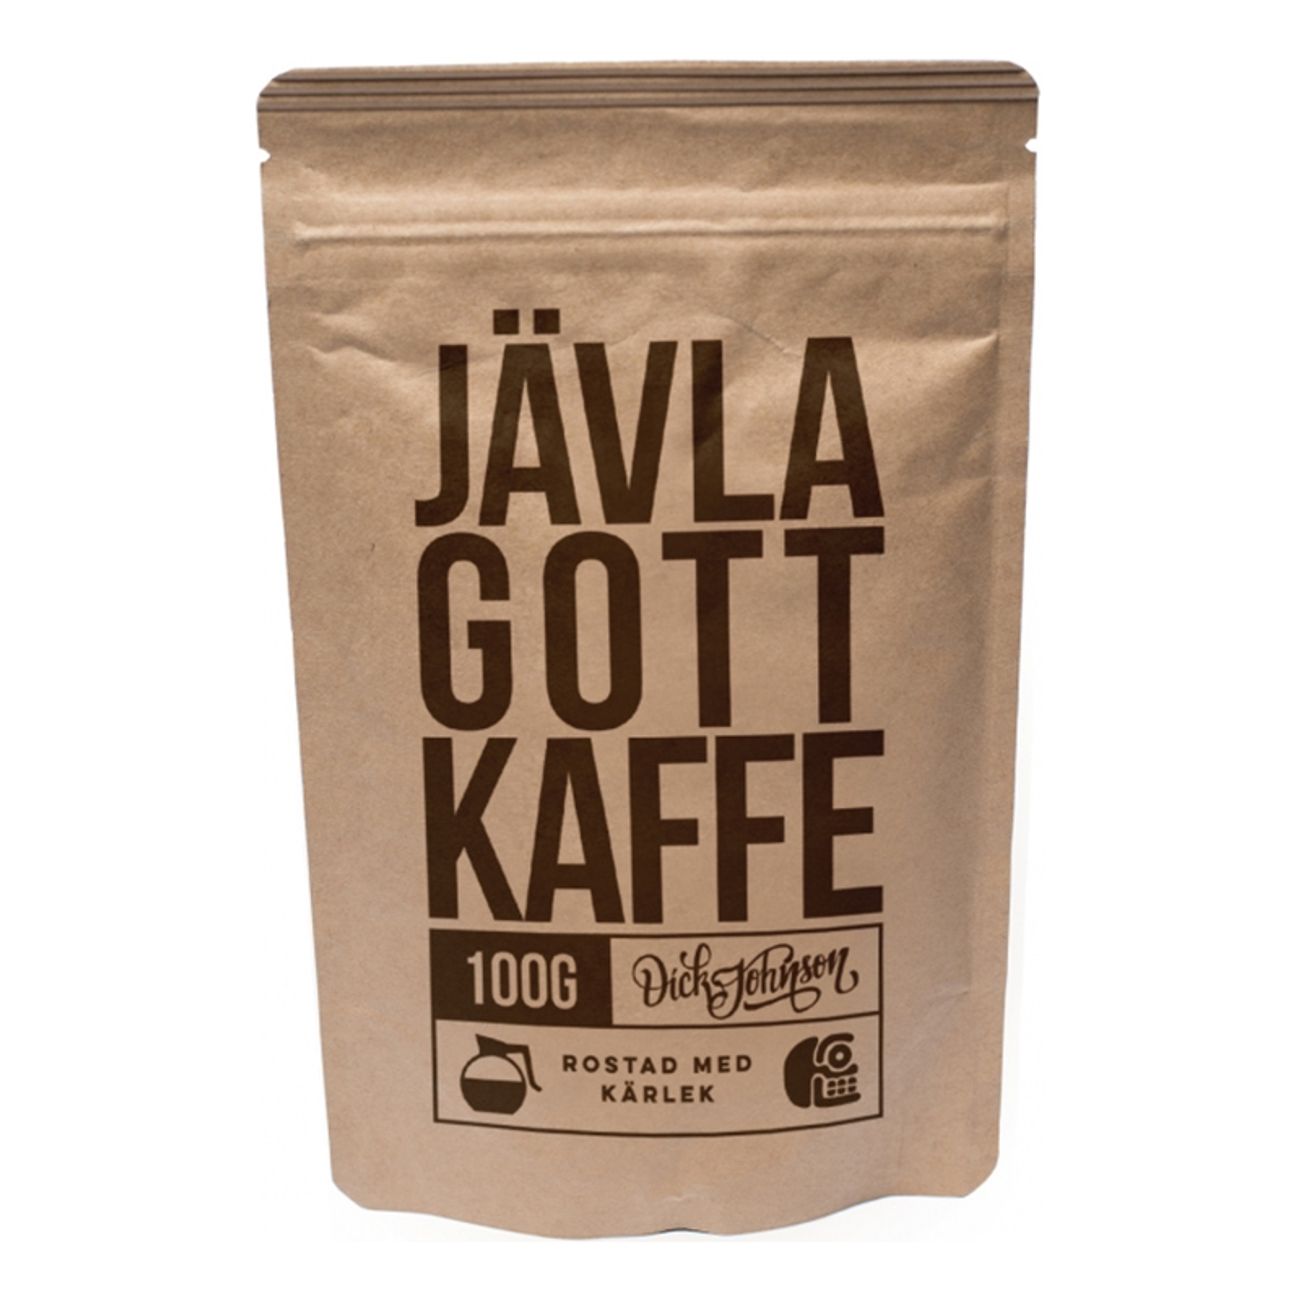 javla-gott-kaffe-1